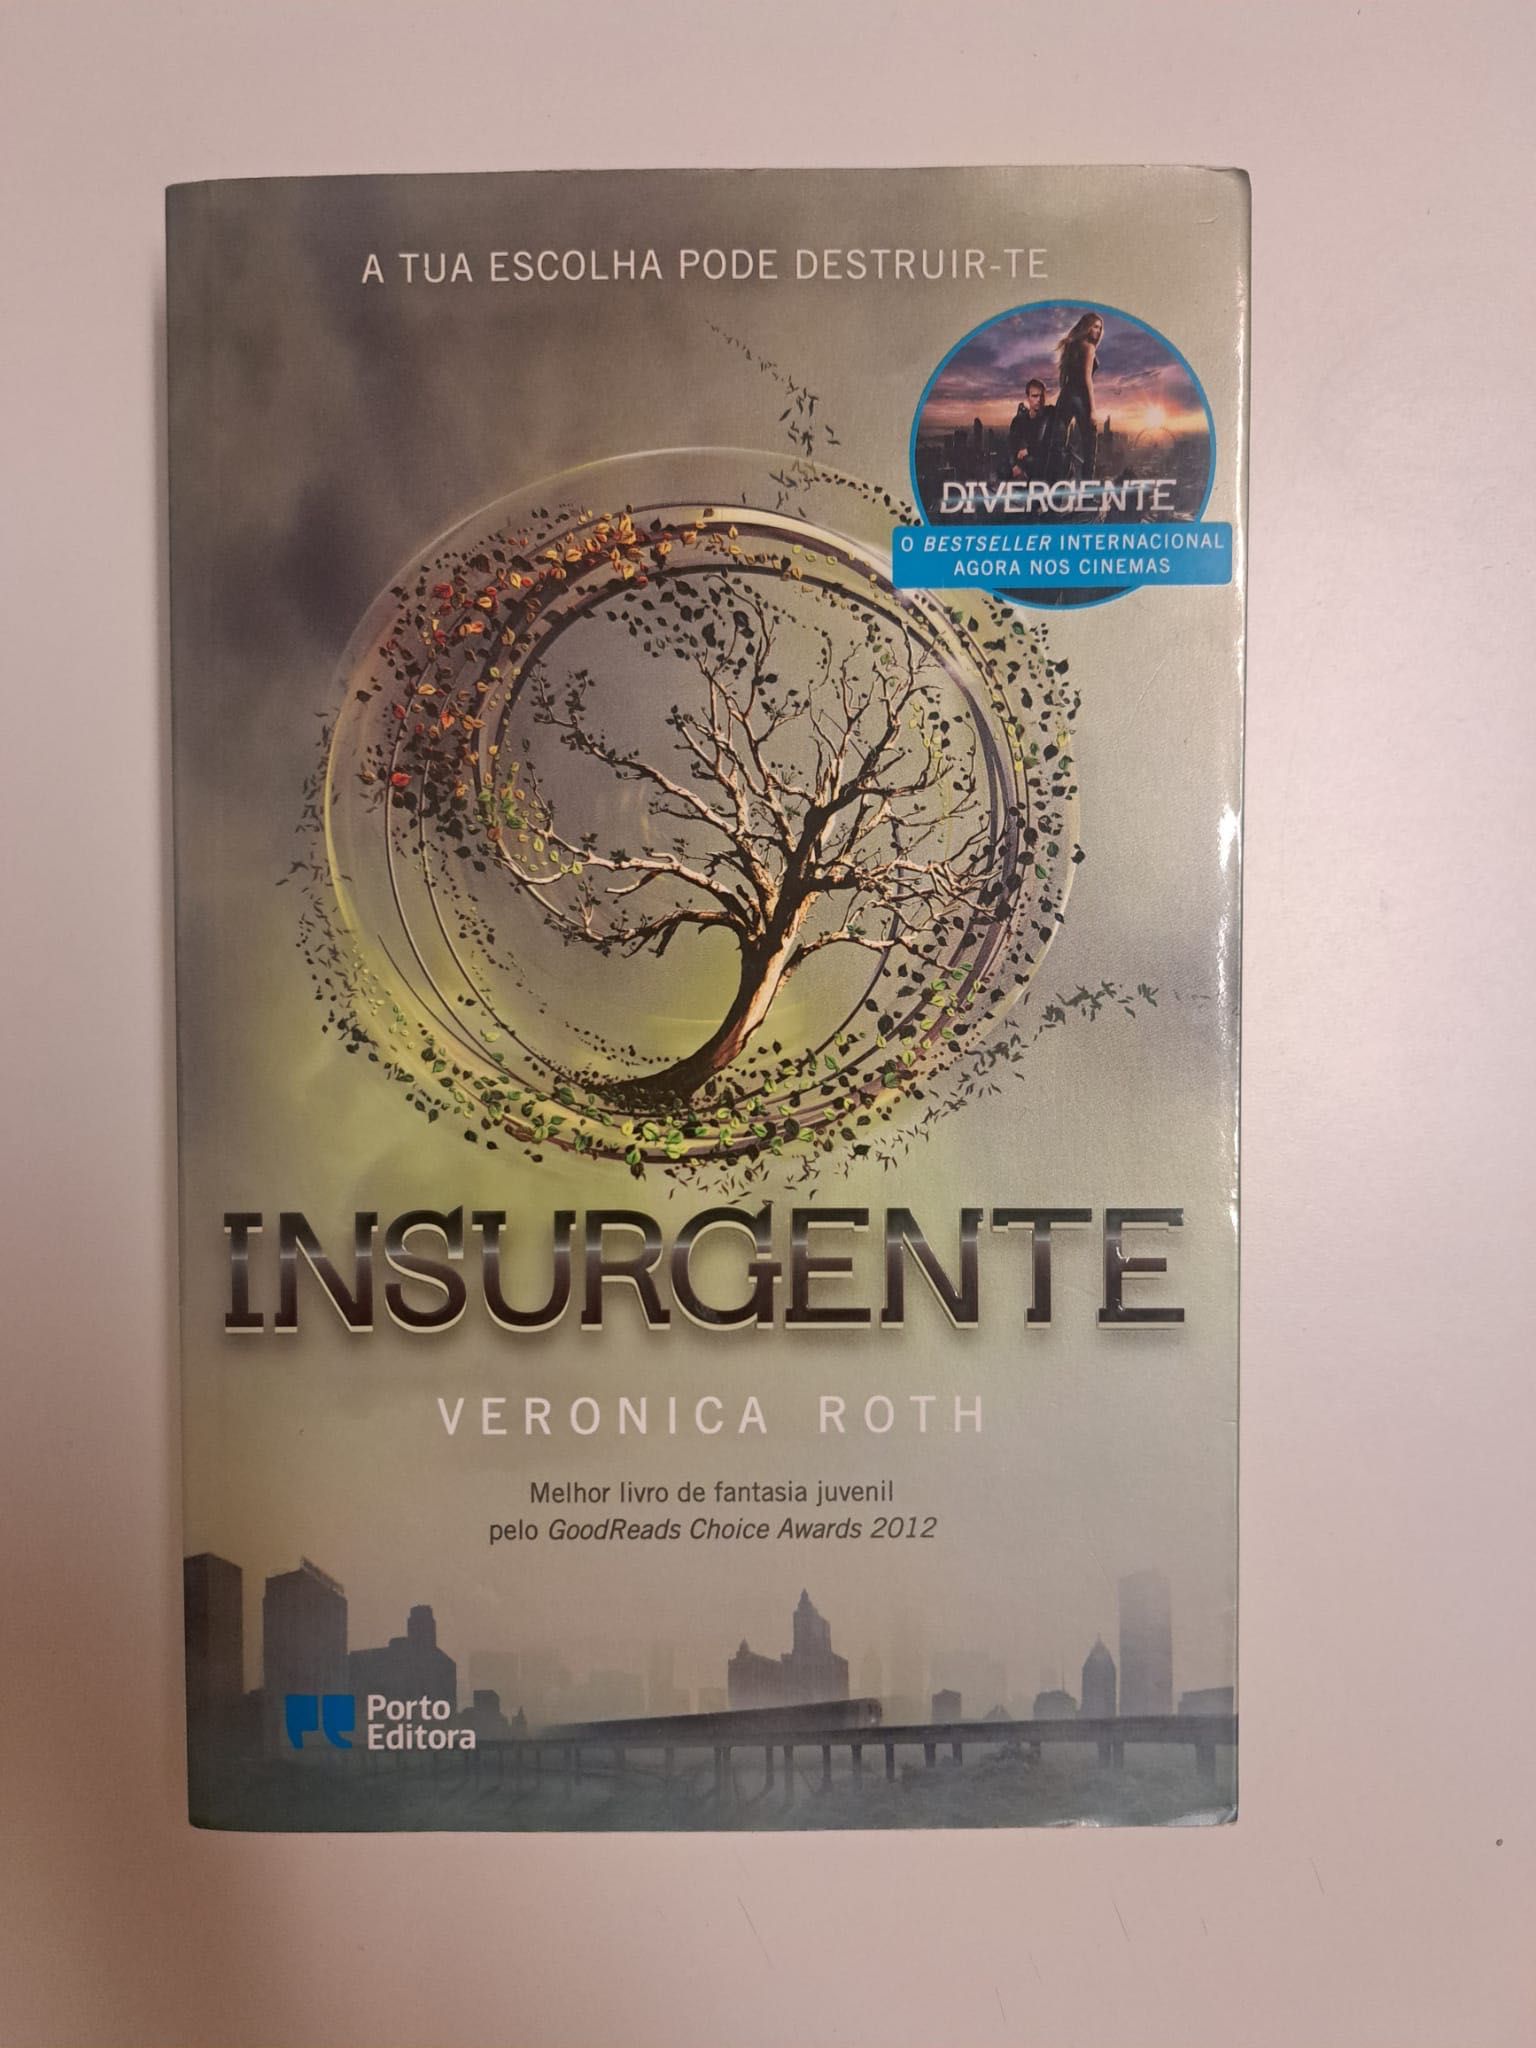 Livro "Insurgente"